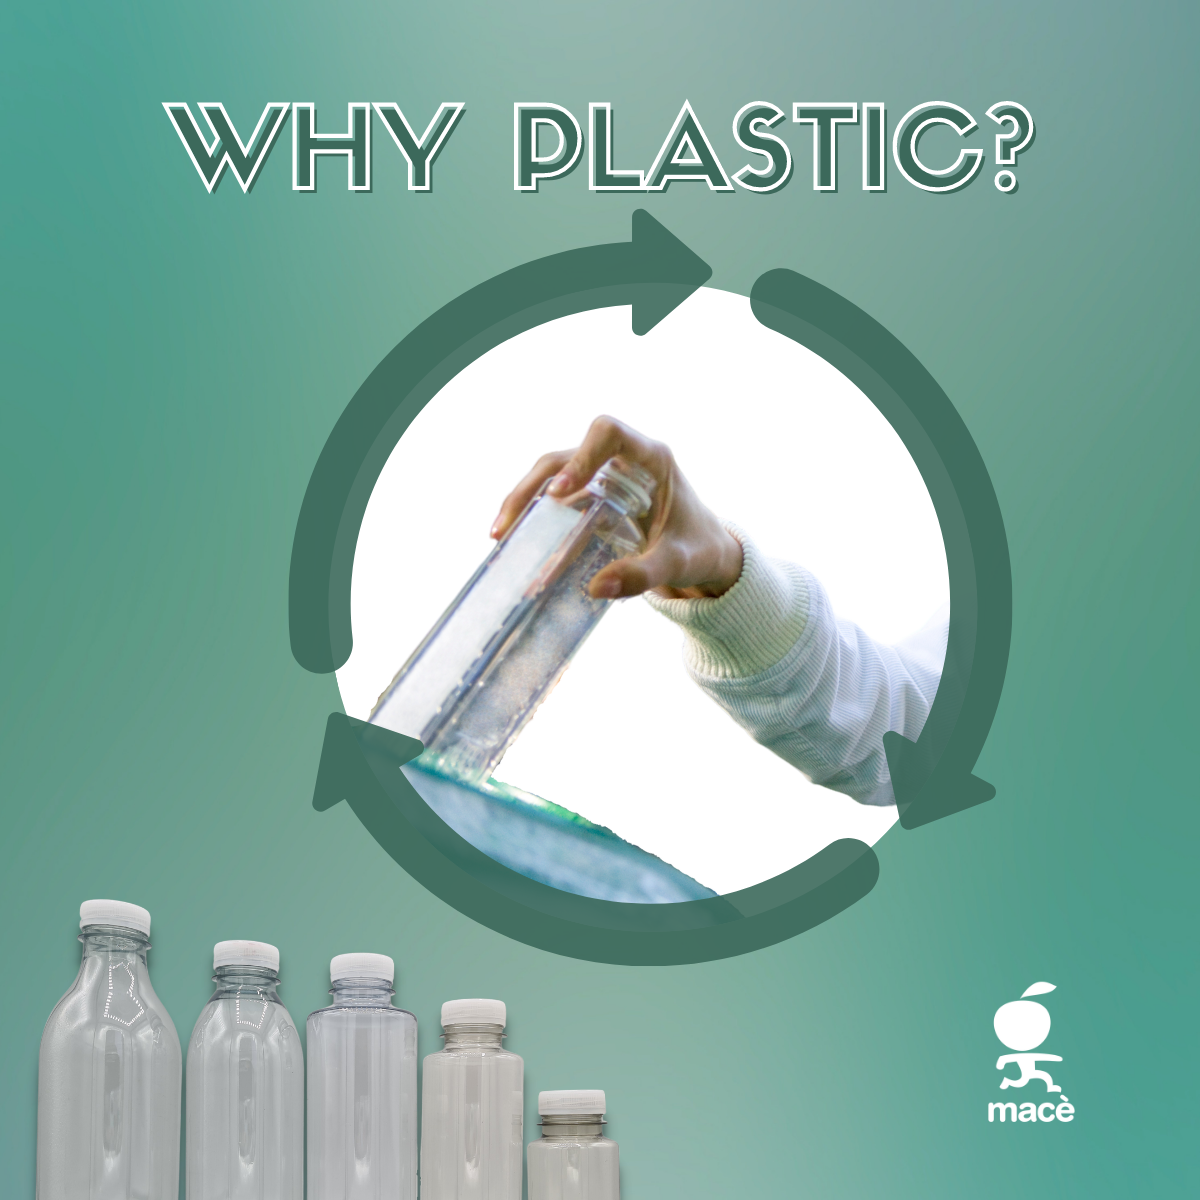 Perchè usiamo le bottiglie di plastica?